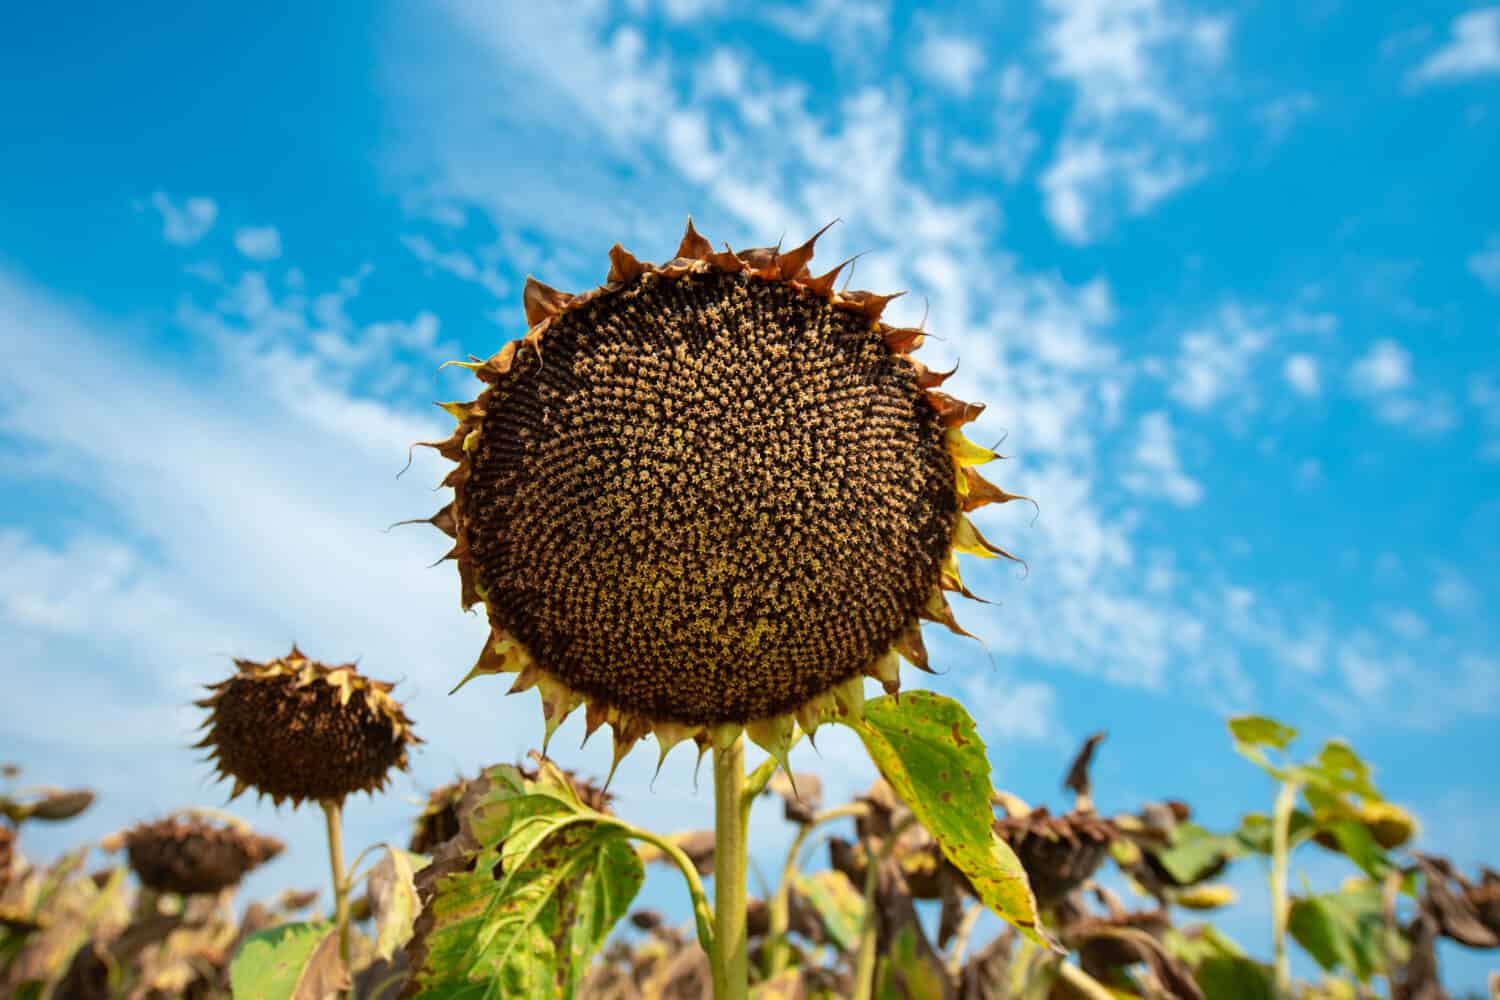 Sunflower field wiht blue sky